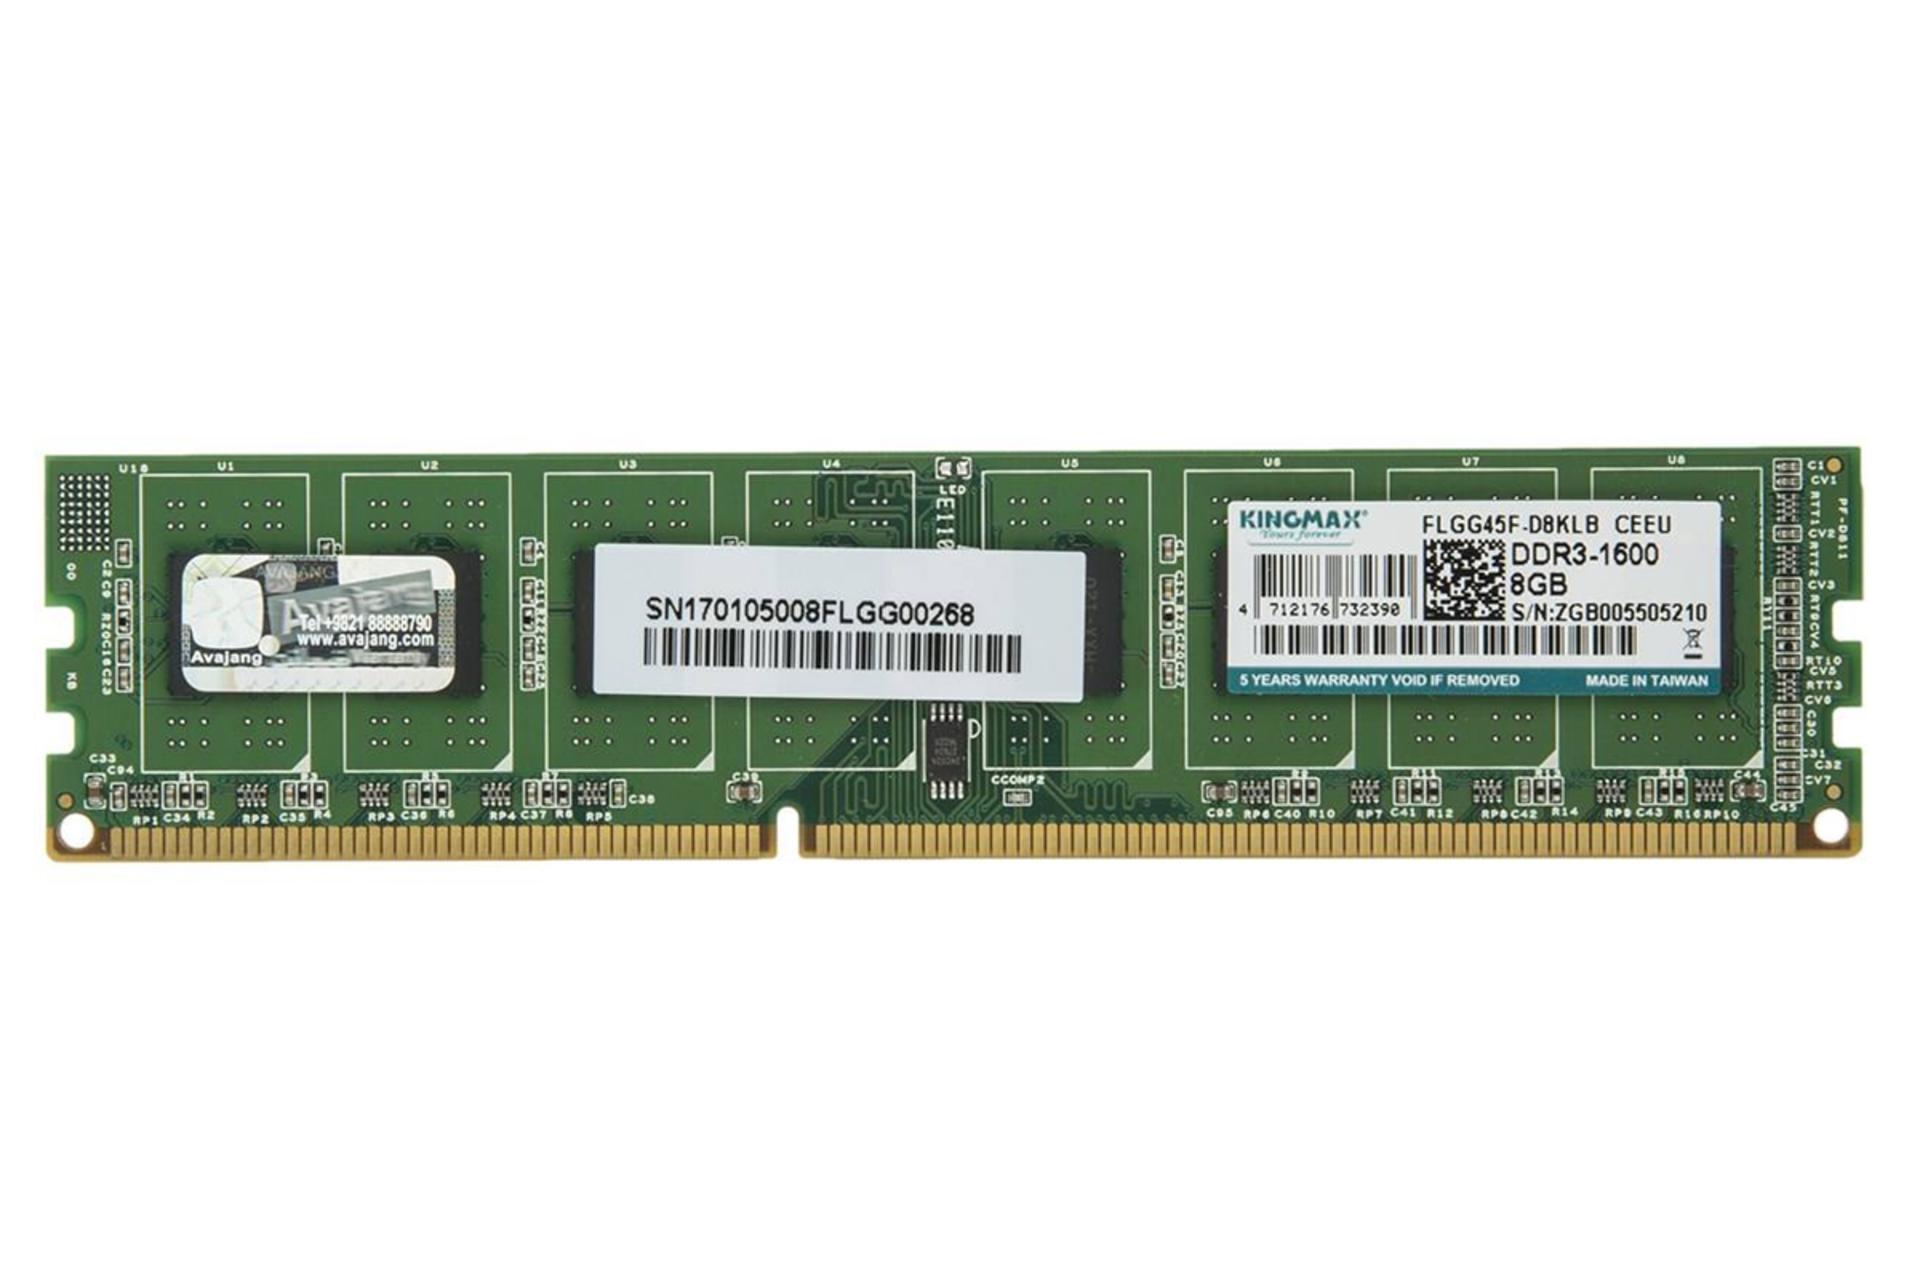 نمای جلو رم کینگ مکس دسکتاپ ظرفیت 8 گیگابایت از نوع DDR3-1600